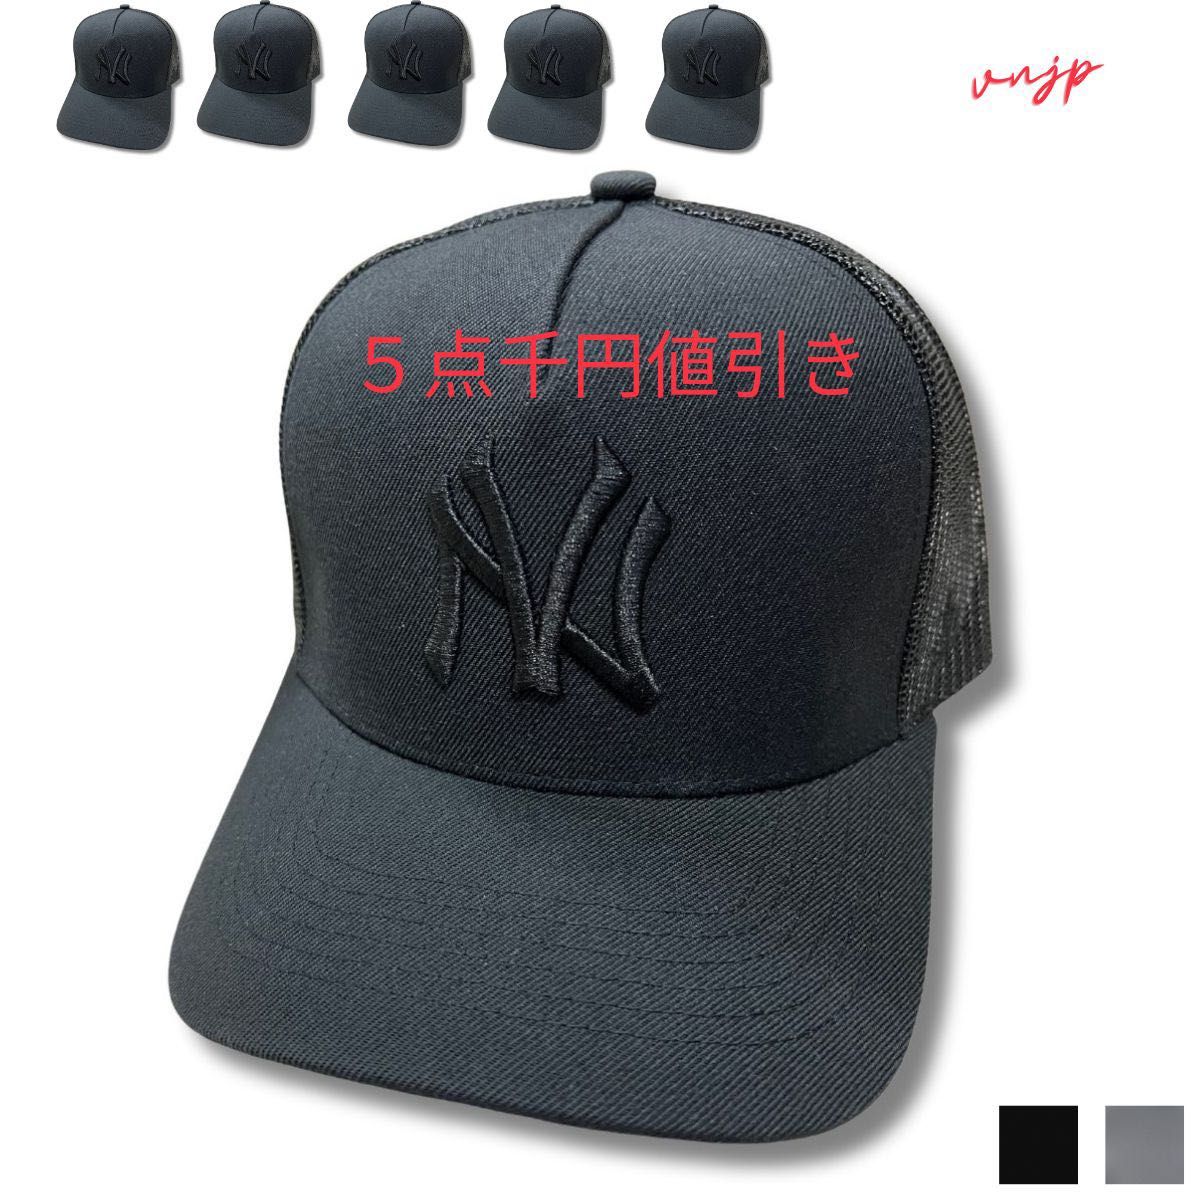 【夏キャンペーン】キャップ 帽子新品 キャップ 帽子 メッシュキャップ フリーサイズ キャップ帽子メンズ